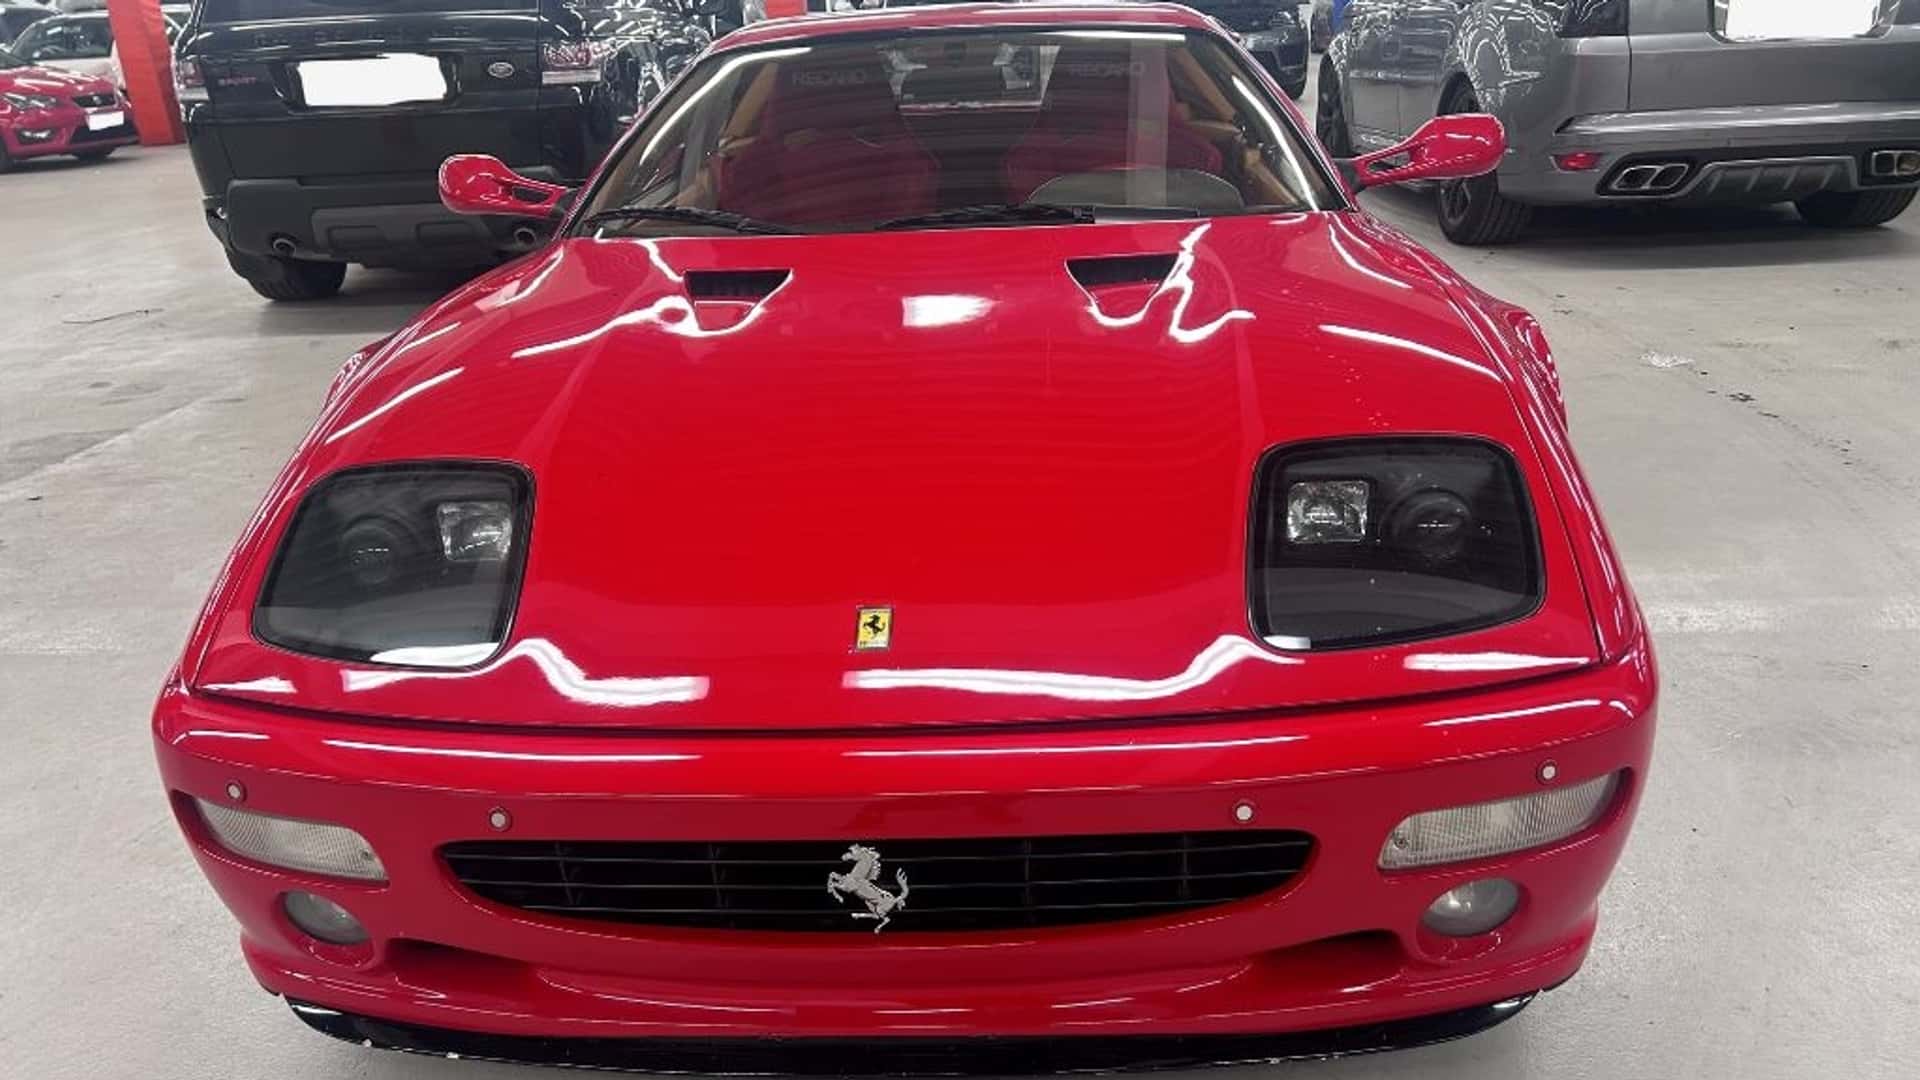 Ferrari 512M